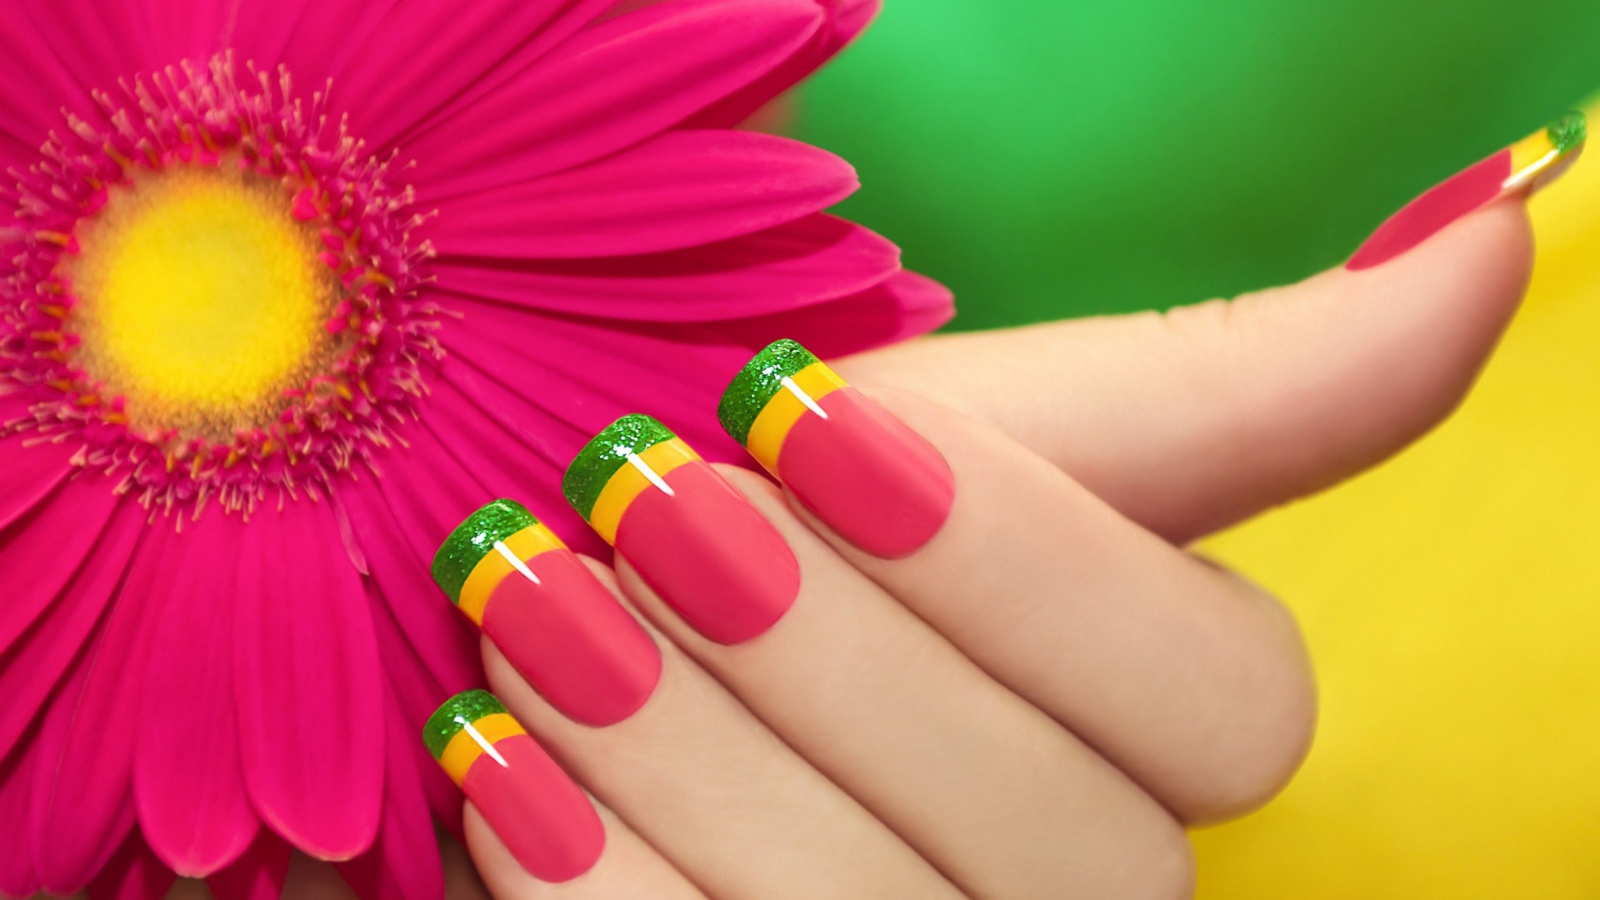 Обои Colorful Nails 1600x900